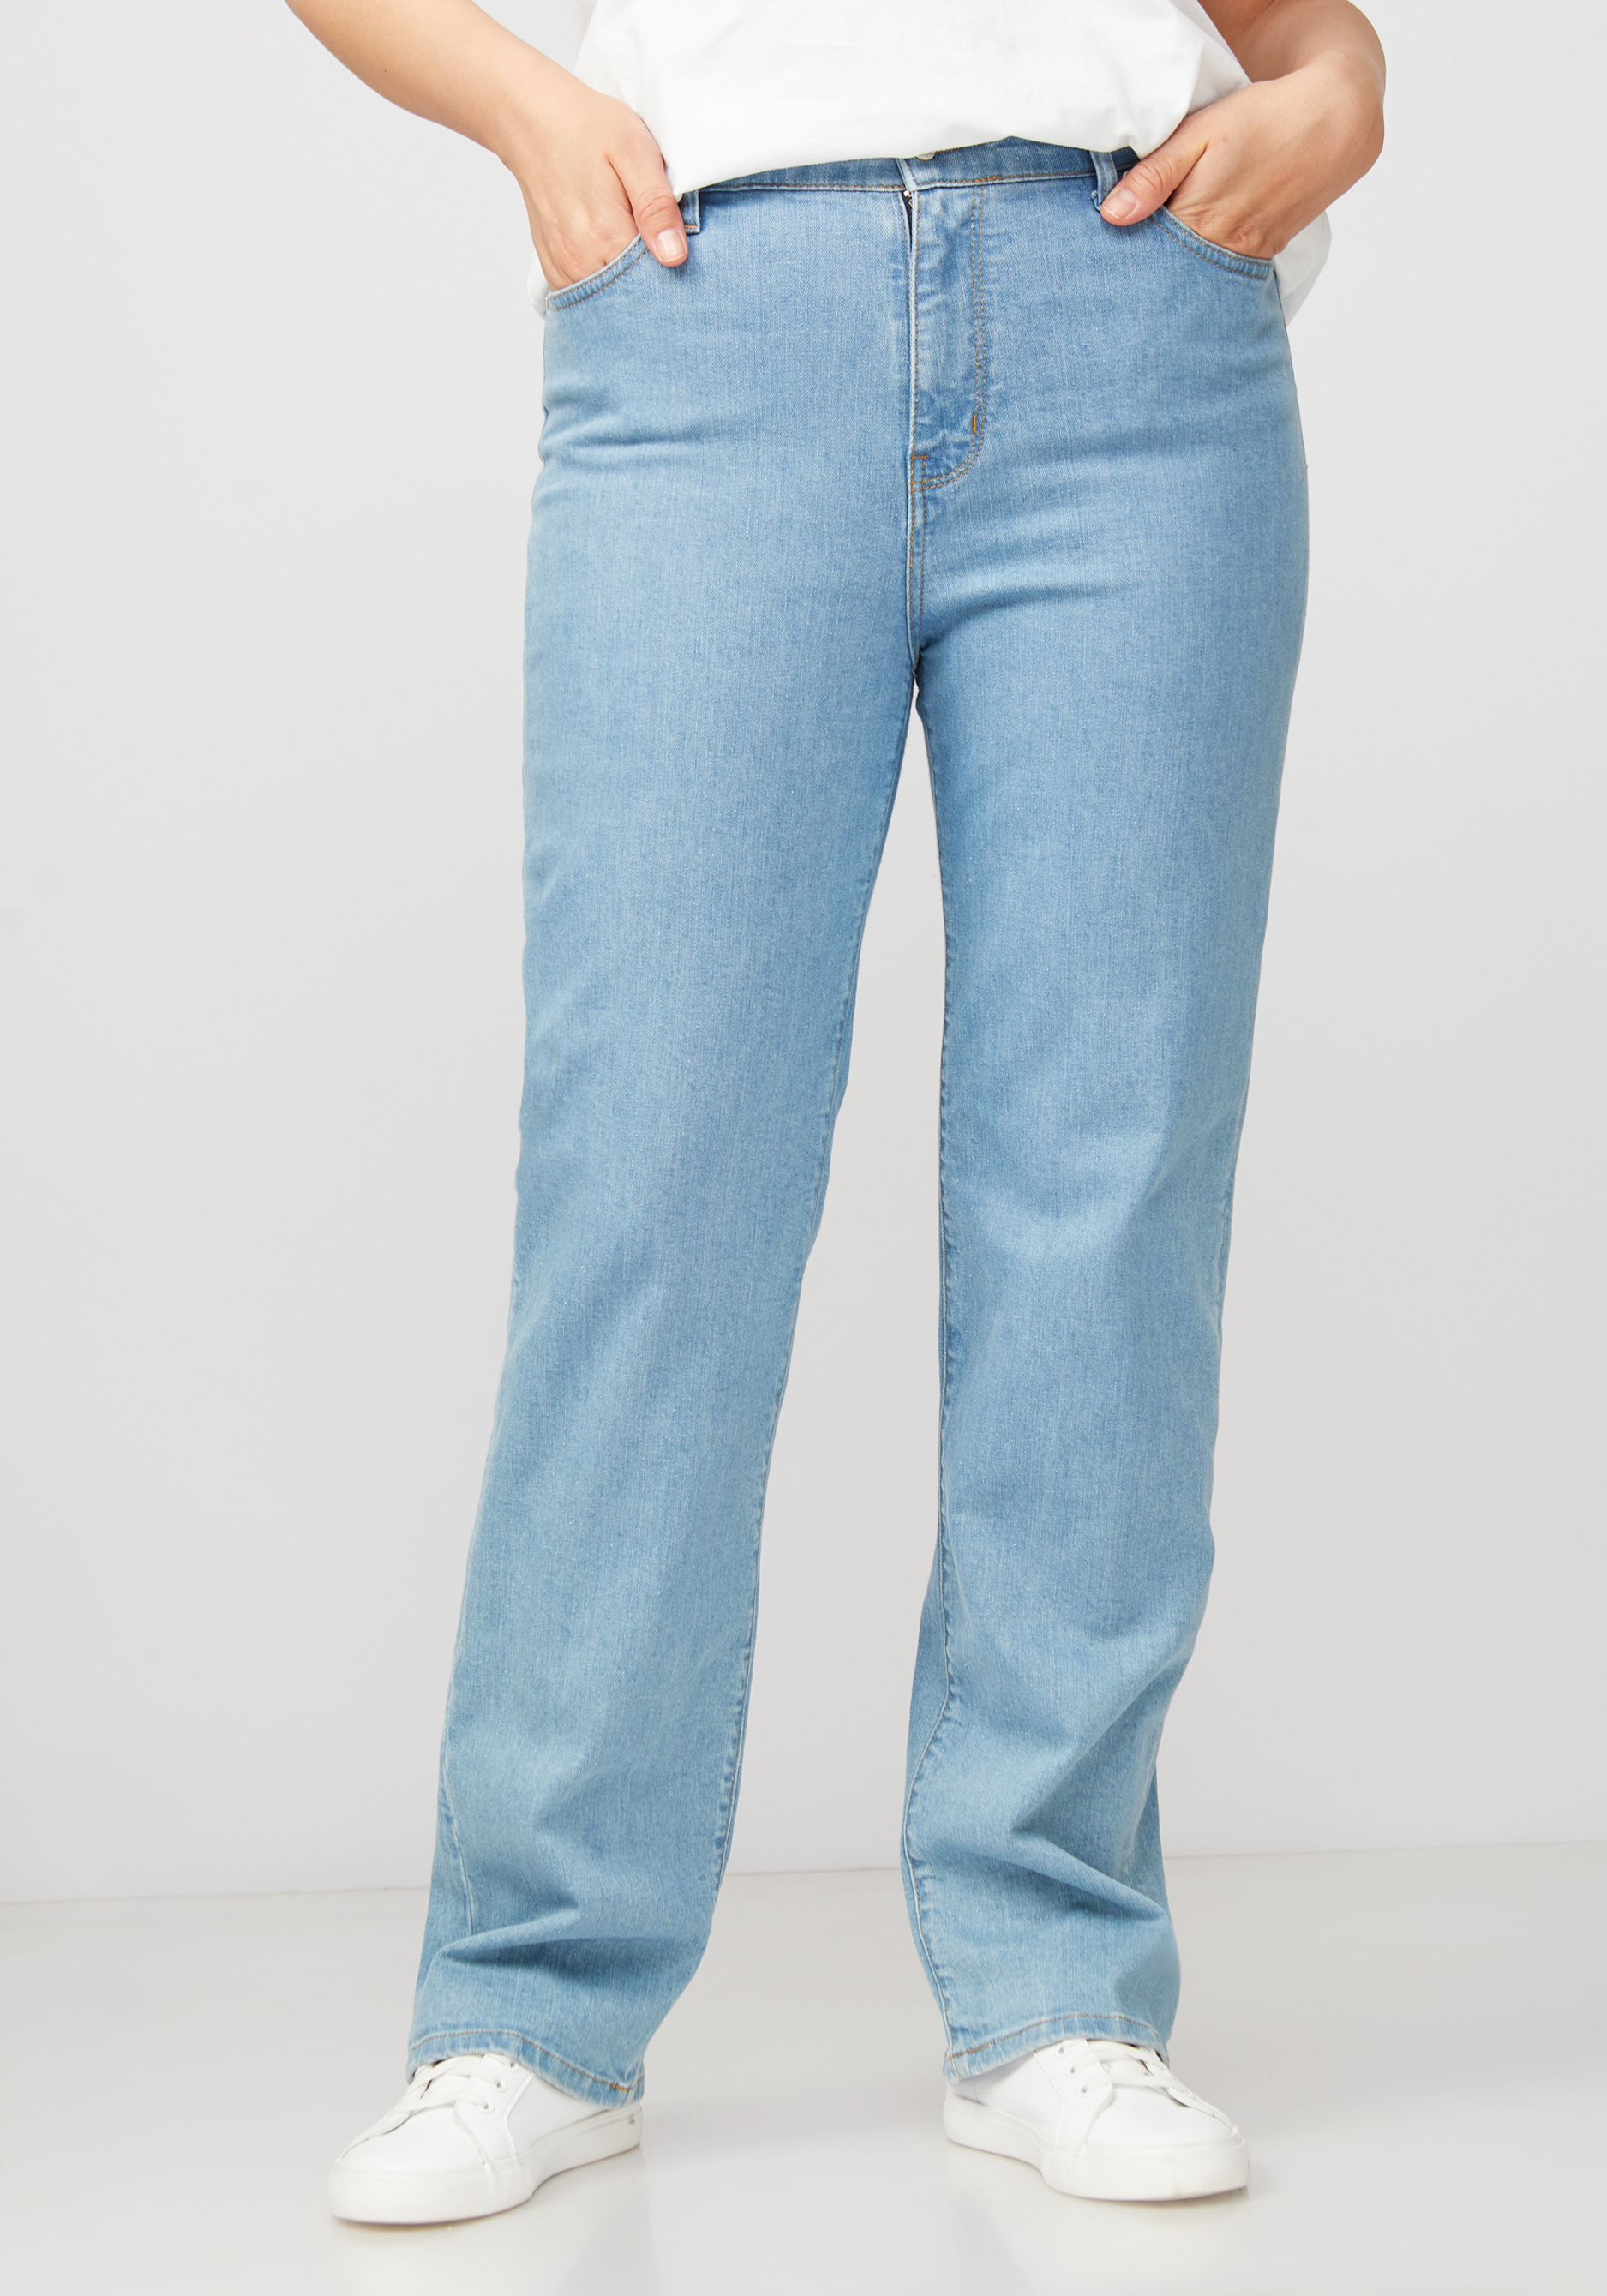 Джинсы с принтом на кармане жен джинсы арт 12 0086 голубой р 25